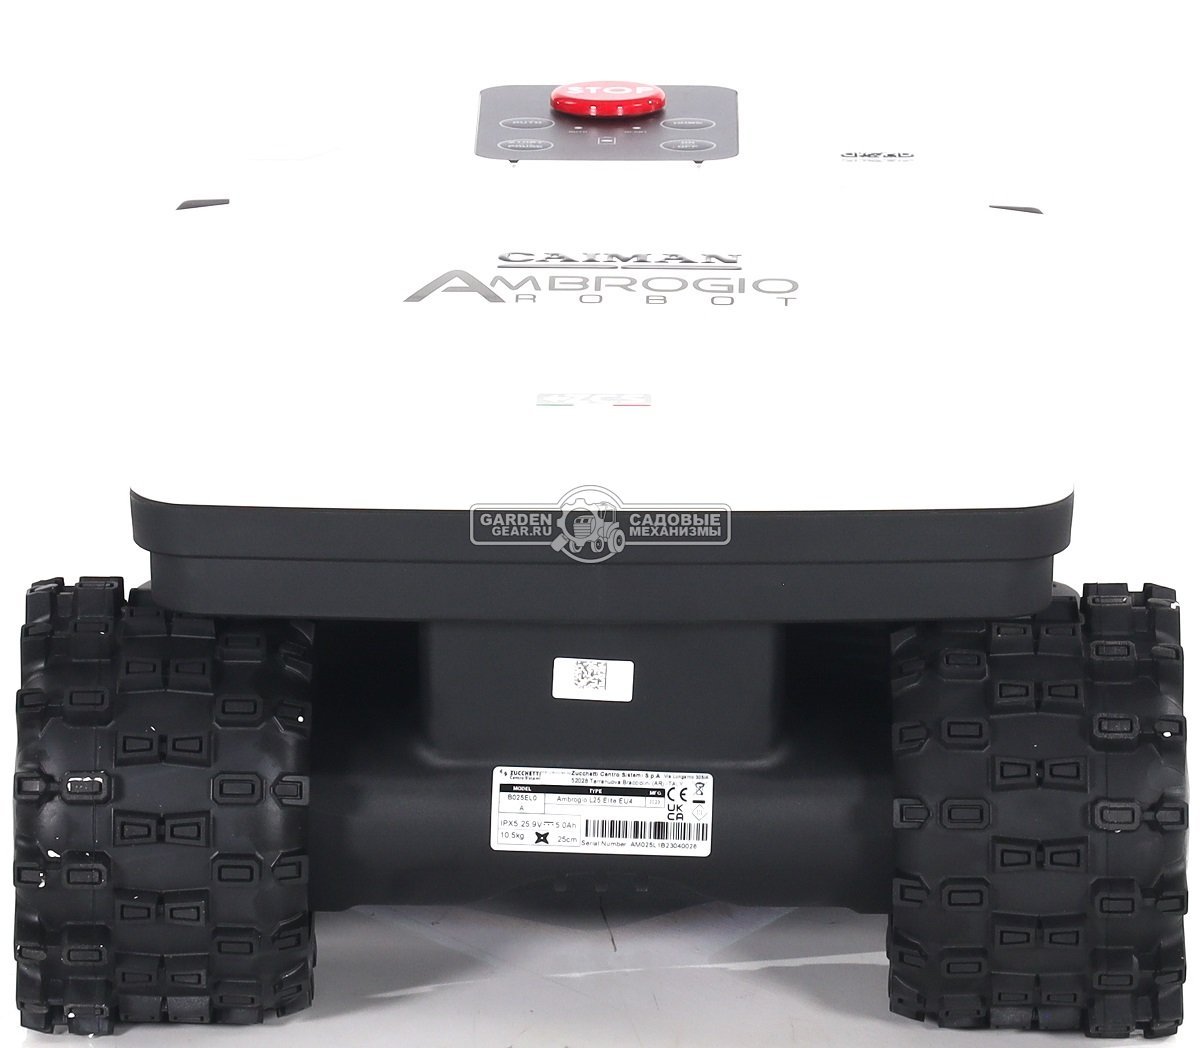 Газонокосилка робот Caiman Ambrogio Twenty 25 Elite (ITA, площадь газона до 1800 м2, нож 25 см., GPS, Bluetooth, алгоритм умной стрижки, вес 10,5 кг.)